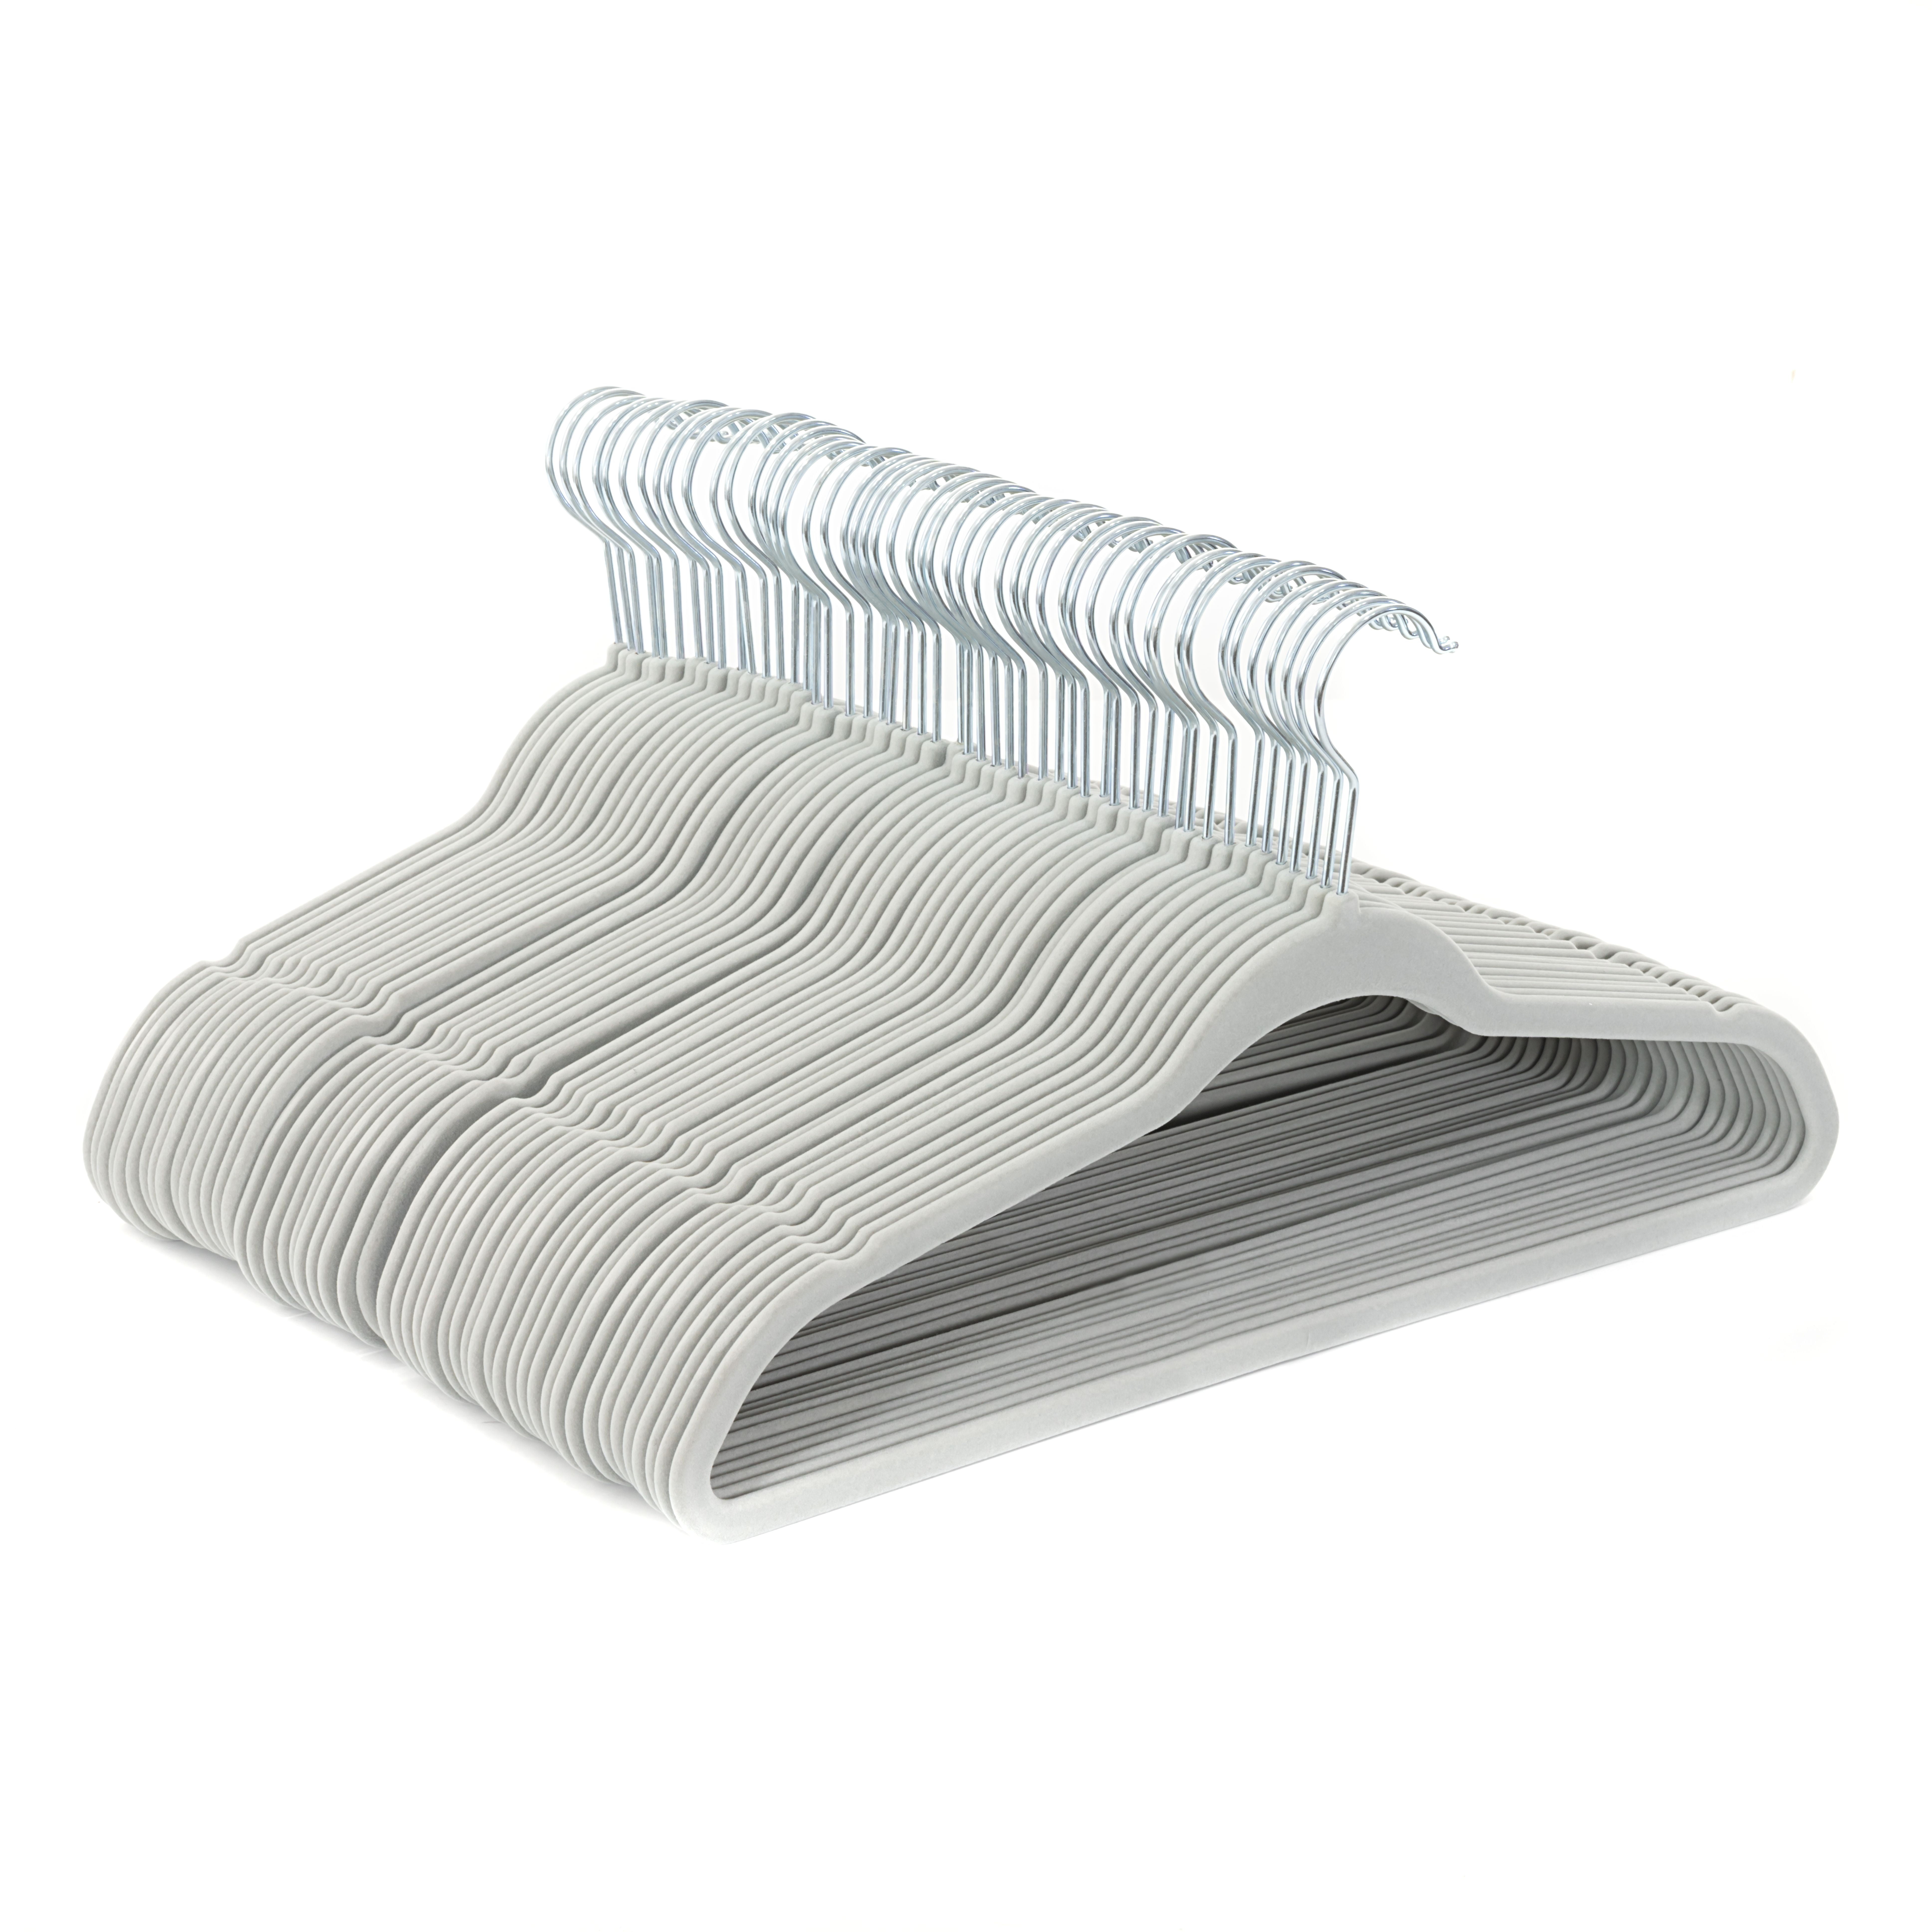 OSTO Black Velvet Non-Slip Standard Shirt Hangers 50-Pack - Bed